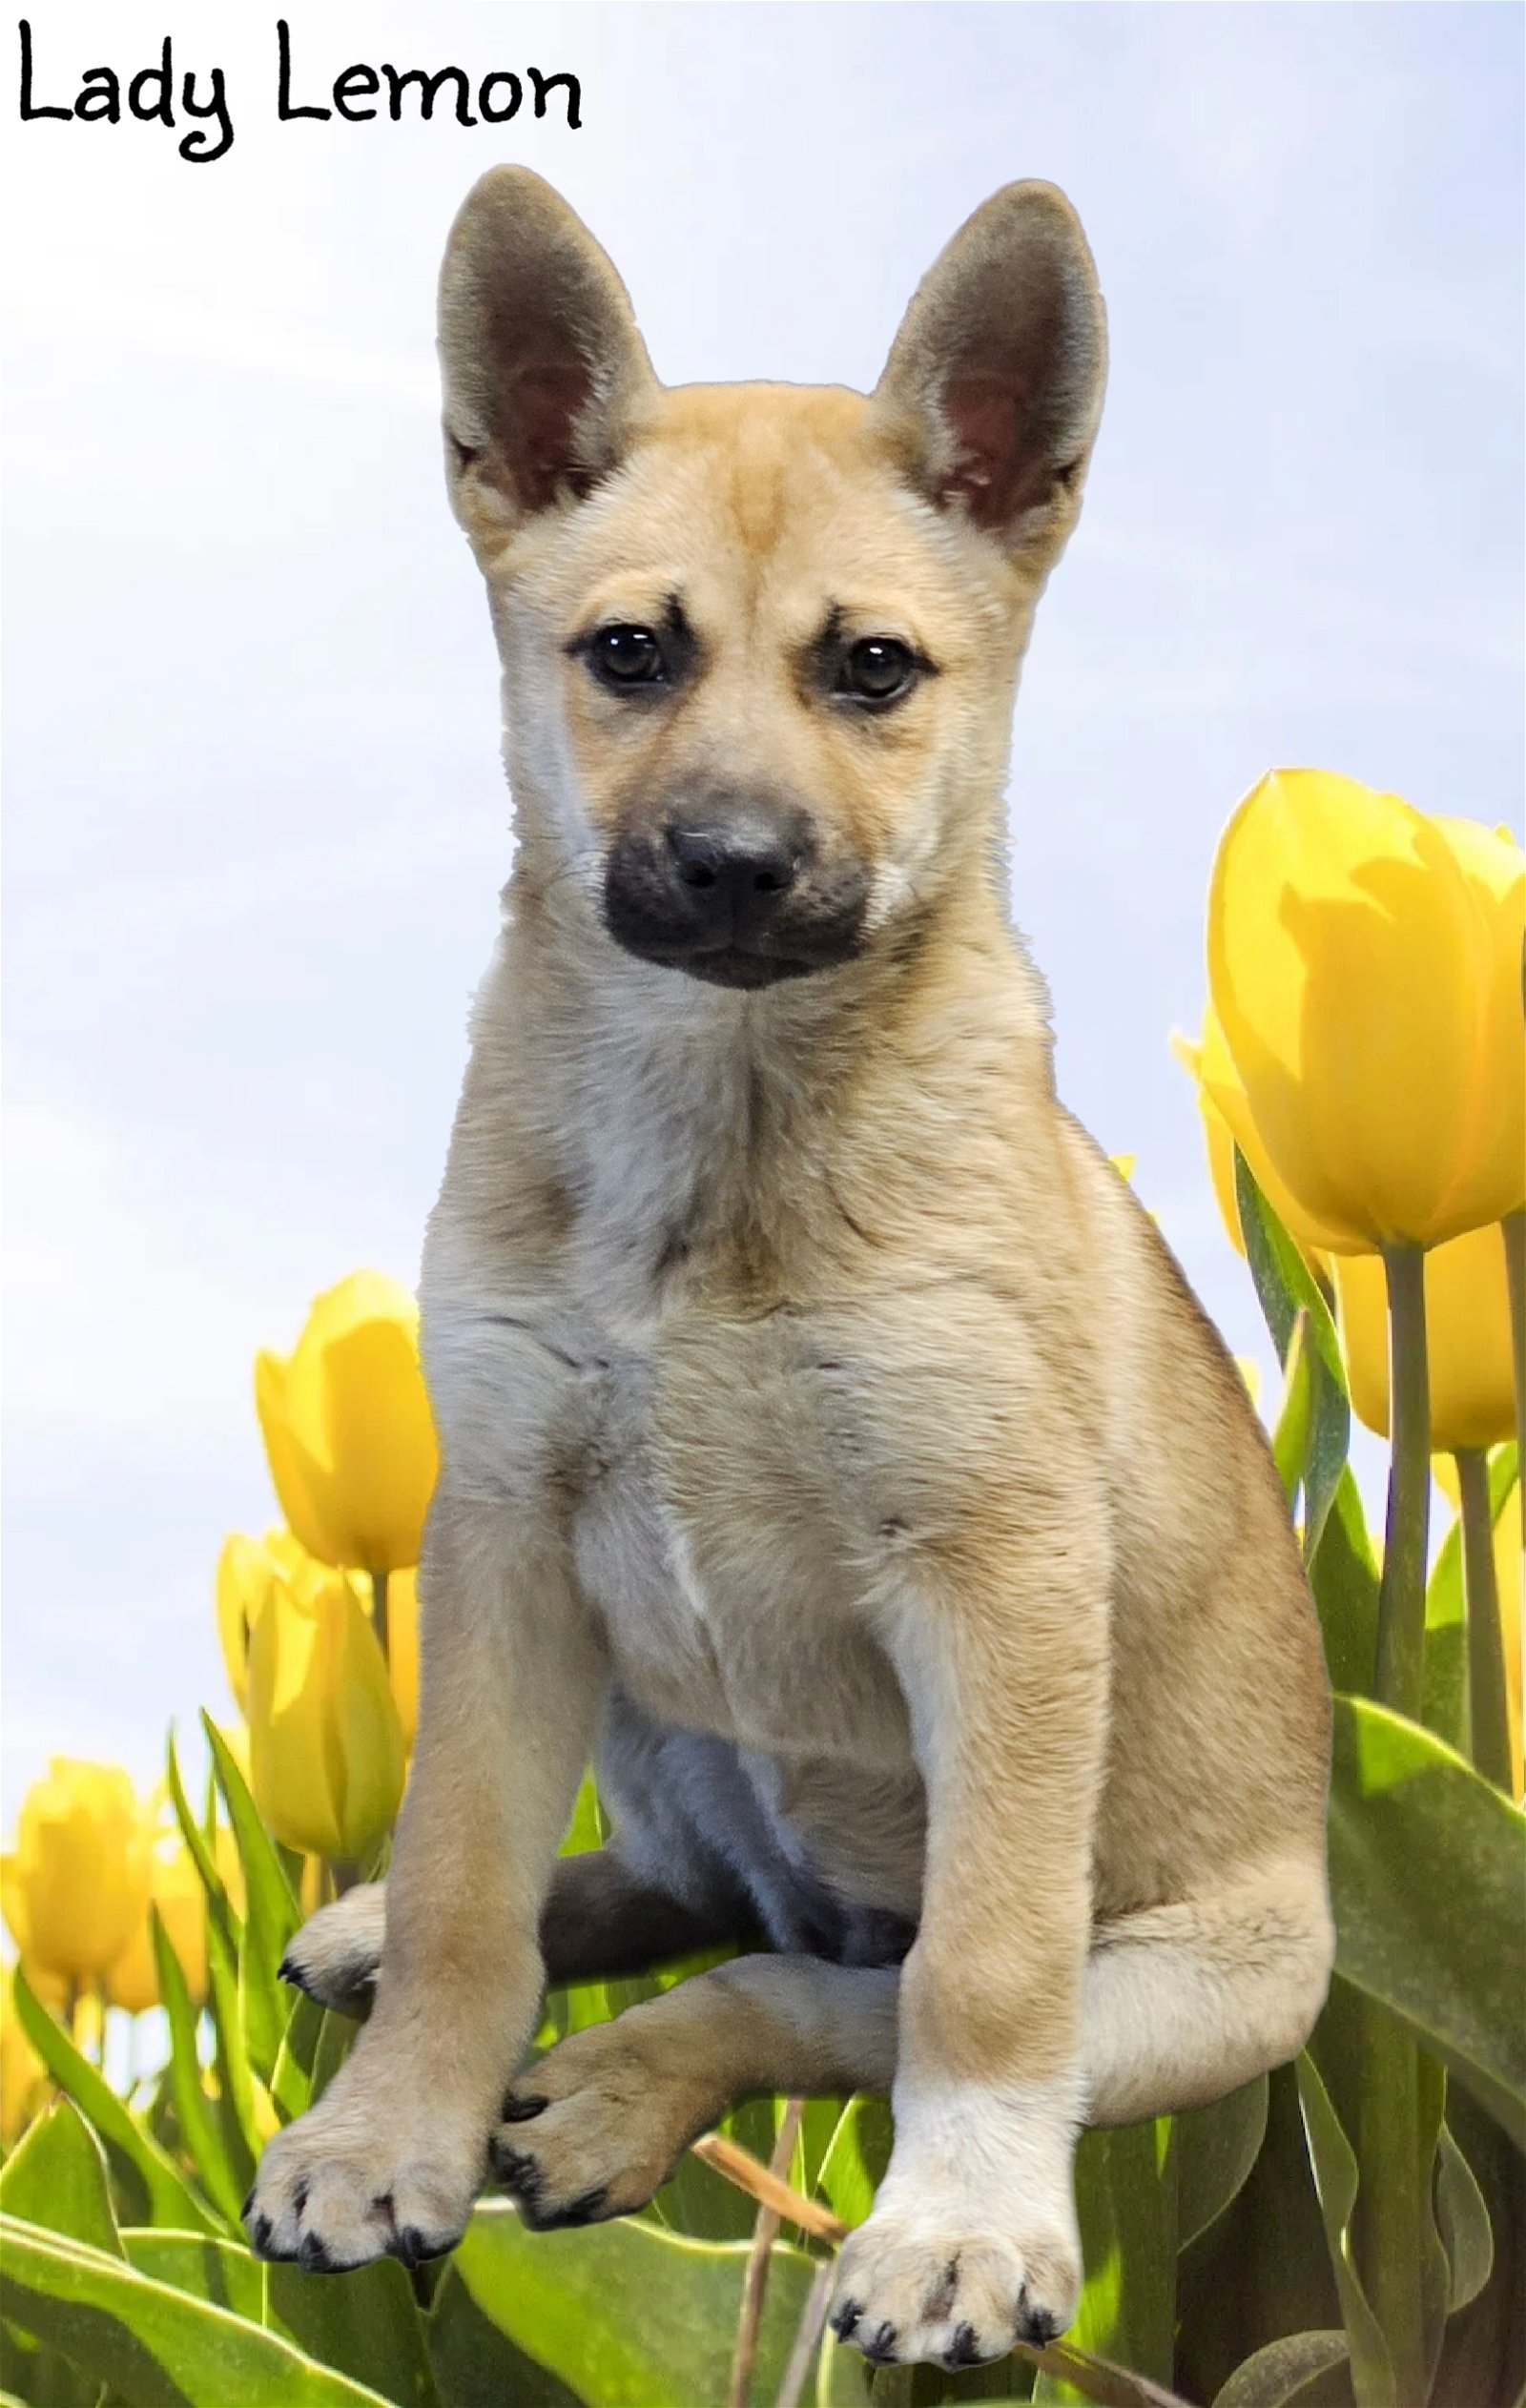 adoptable Dog in Phelan, CA named Lady Lemon